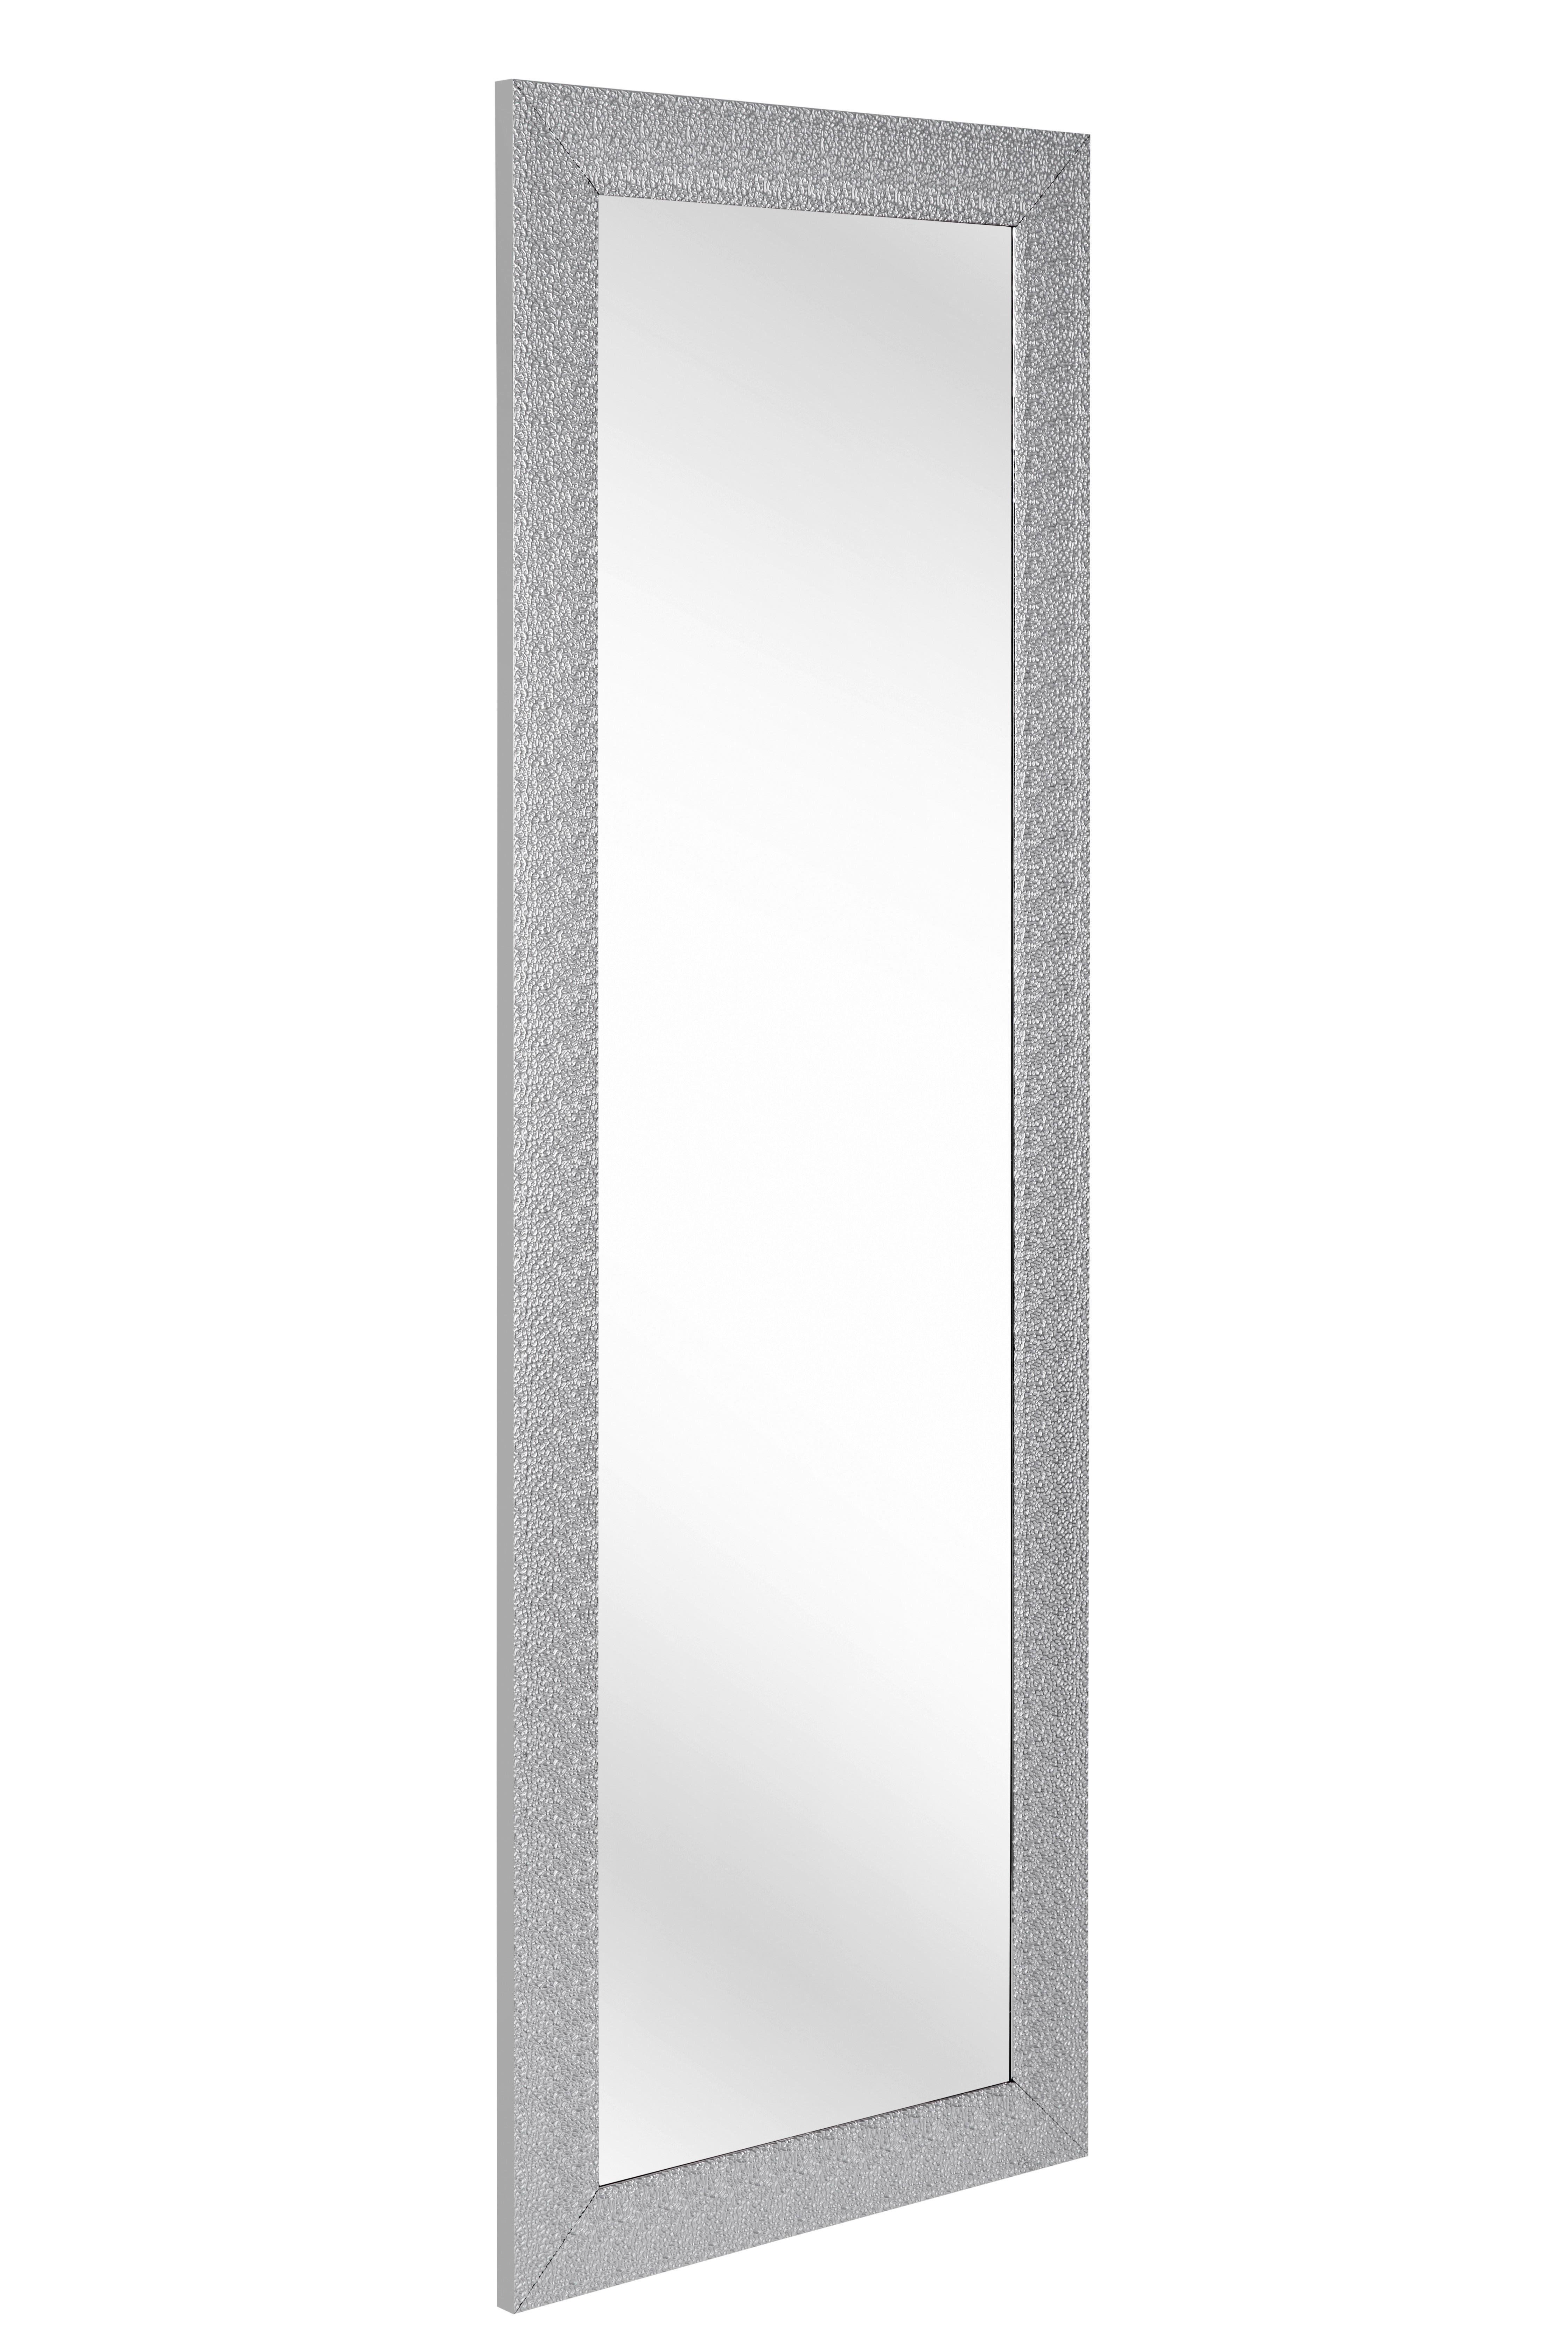 STENSKO OGLEDALO, 50/150/2 cm steklo  - srebrne barve, Trendi, umetna masa/steklo (50/150/2cm) - Carryhome